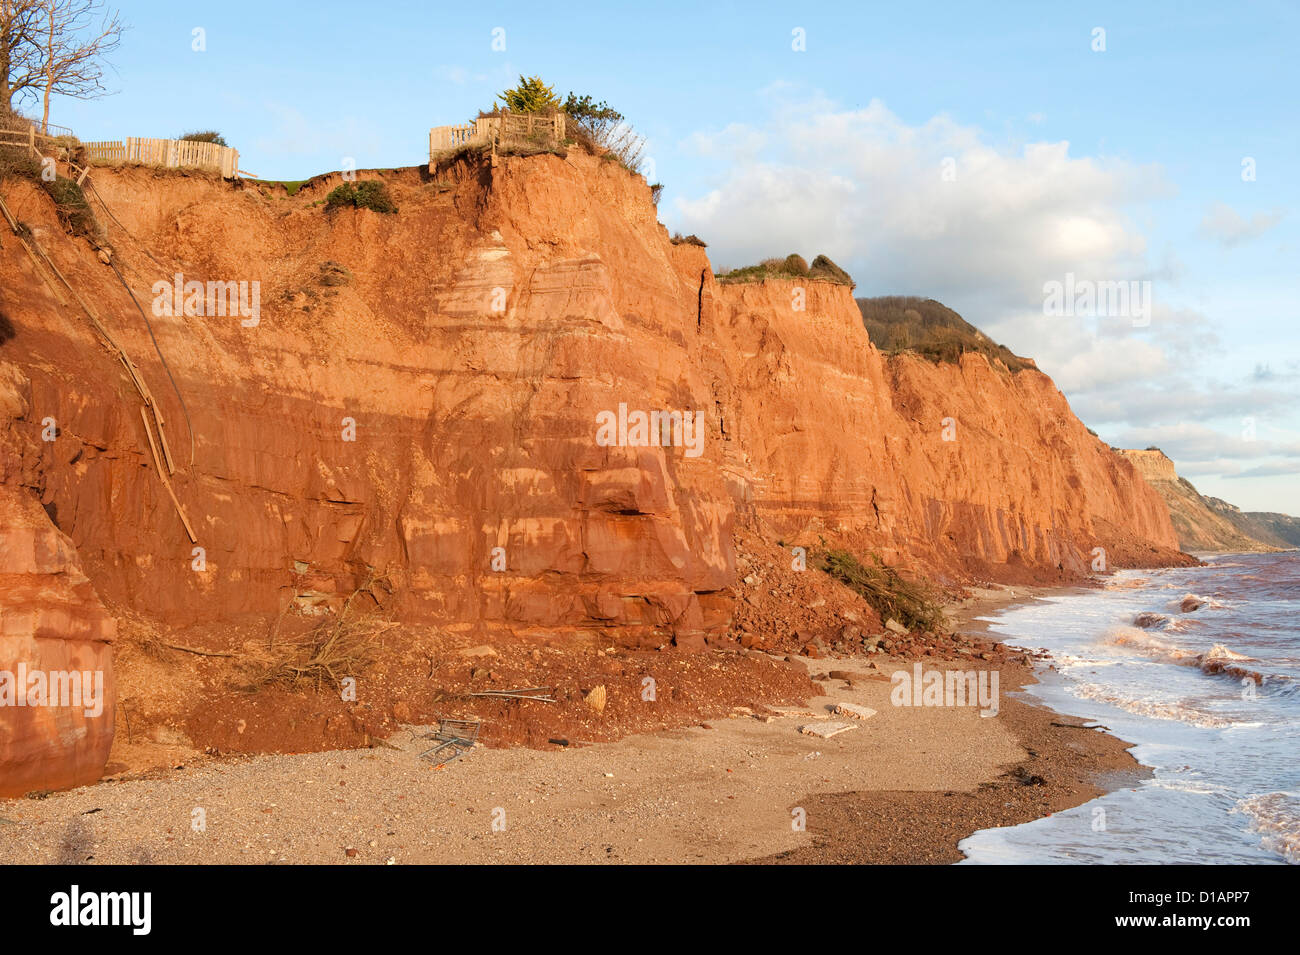 Oriente scogliere a Sidmouth nel Devon con grave erosione costiera e smottamenti Foto Stock